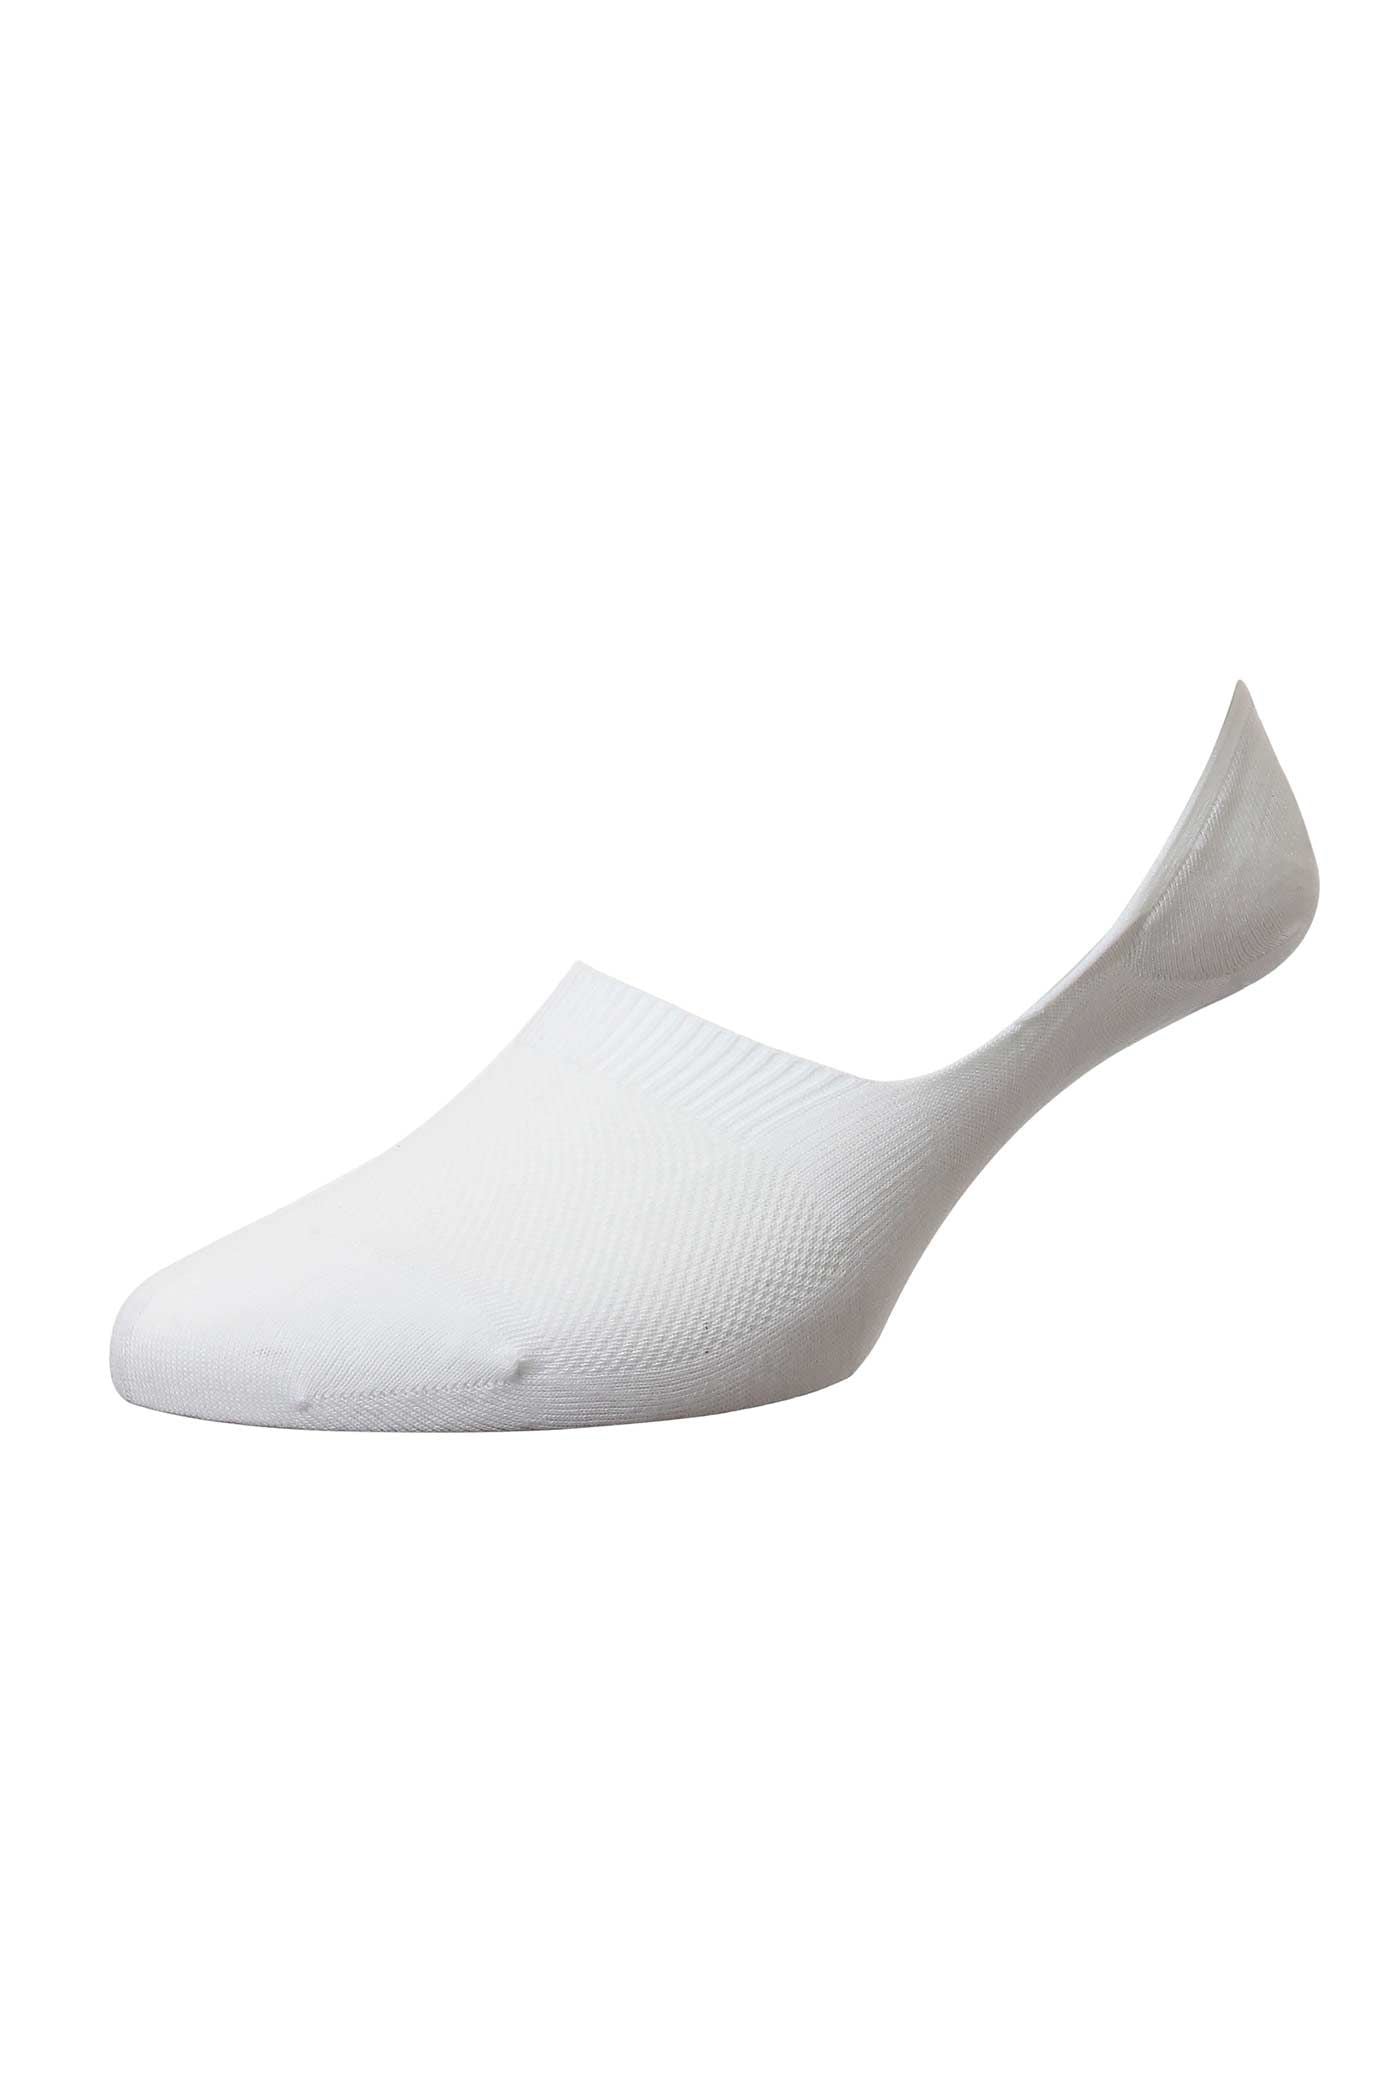 Men's Socks - Seville (3000F) Egyptian Cotton - WHITE